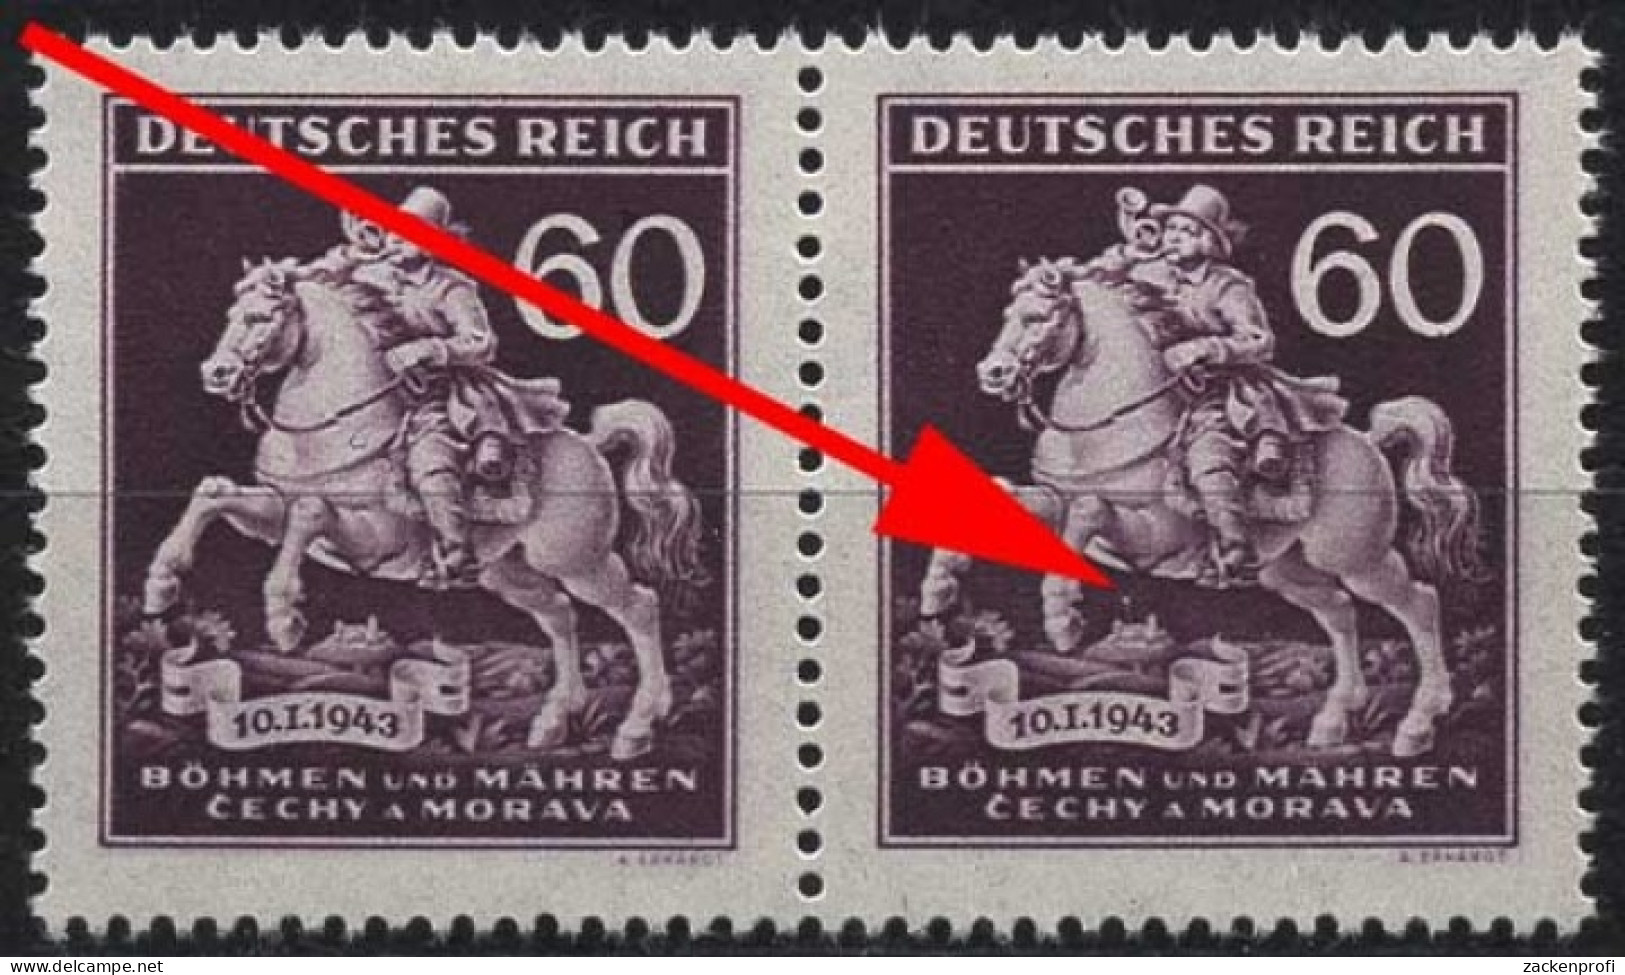 Böhmen & Mähren 113 Postfrisch Mit Plattenfehler XIX - Unused Stamps